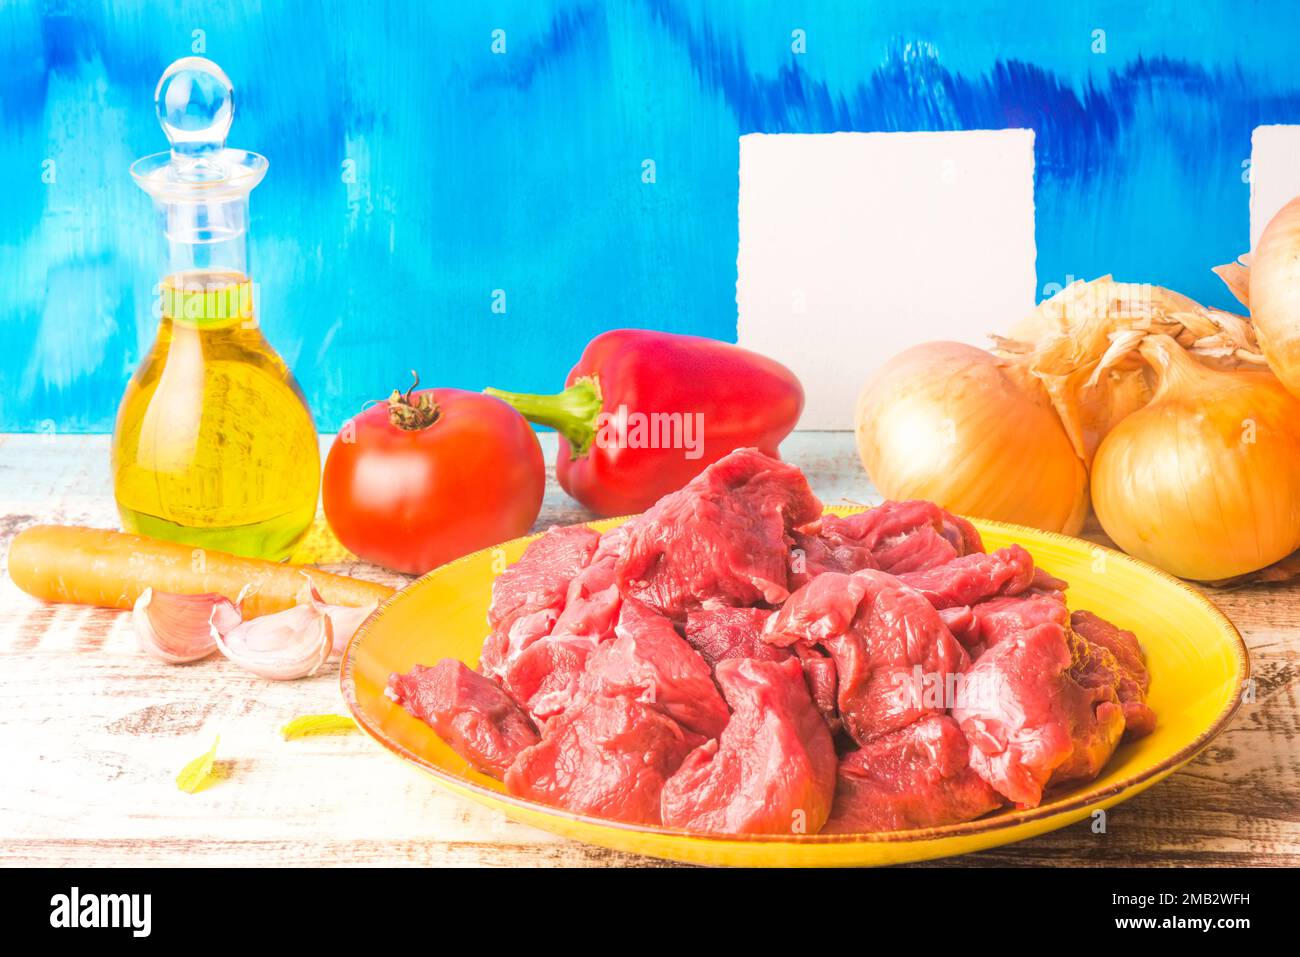 Viande crue pour ragoût, ingrédients biologiques crus de qualité supérieure, coloré et gai encore la vie Banque D'Images